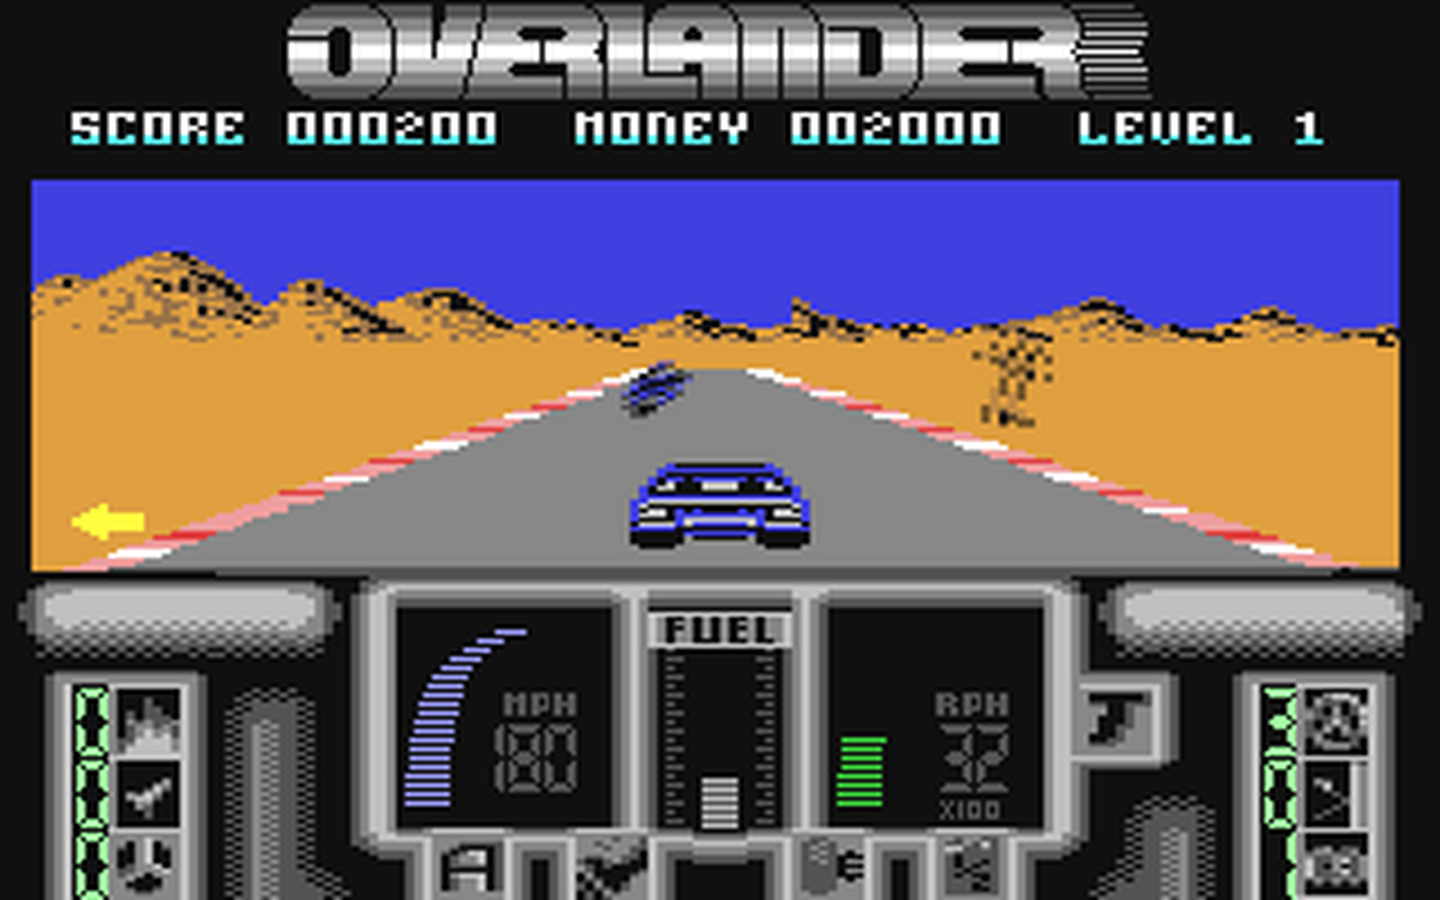 C64 GameBase Overlander Elite 1988